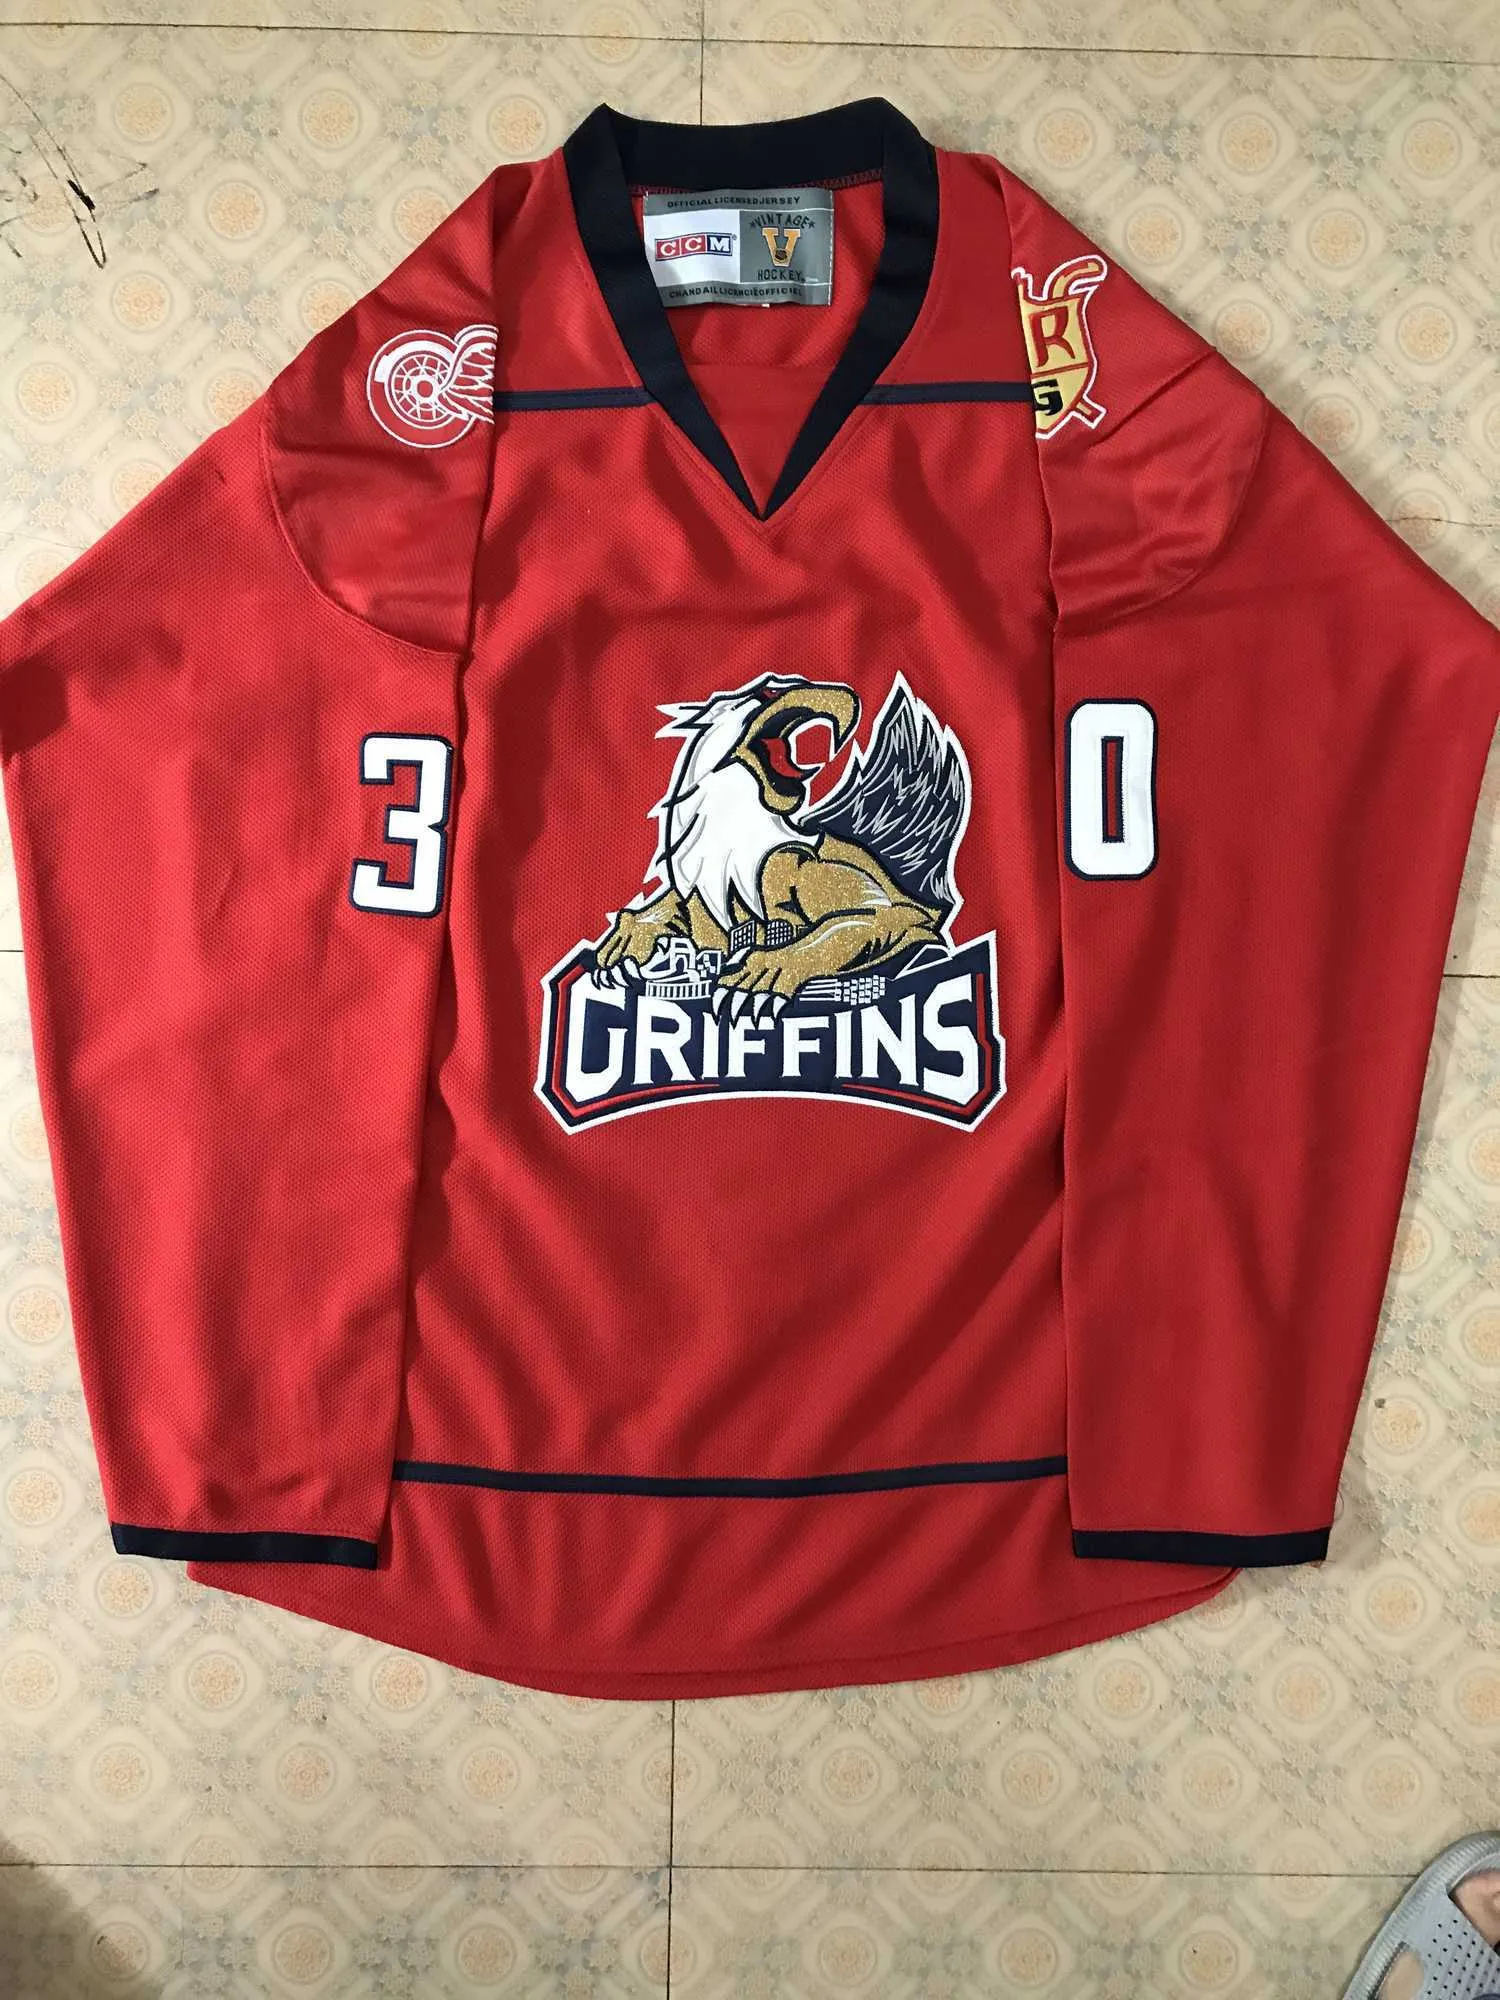 30 Tom McCollum Grand Rapids Griffins Hockey Jersey costurado personalizado qualquer nome e número